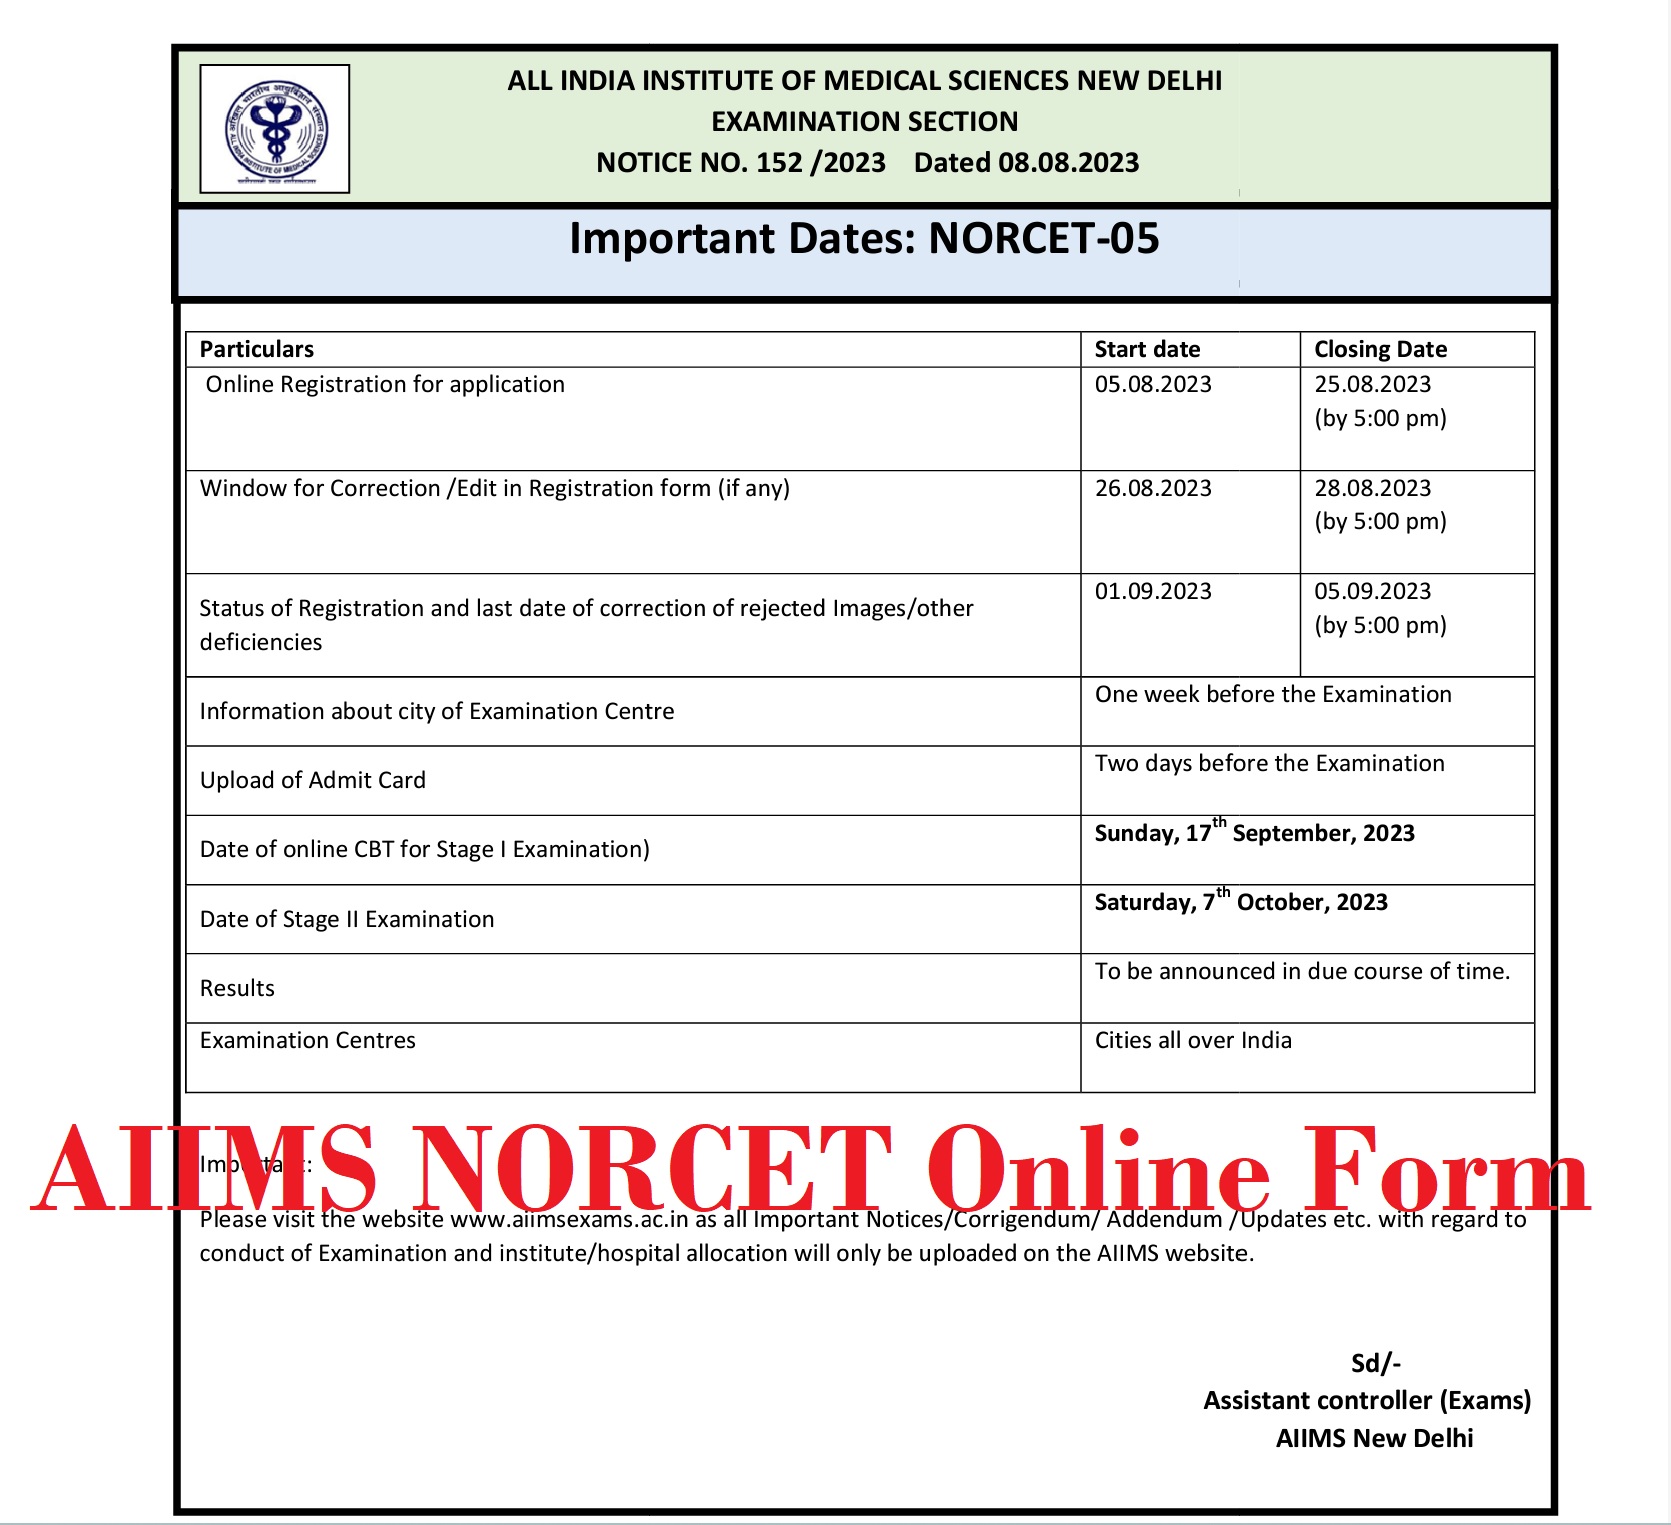 AIIMS NORCET Online Form